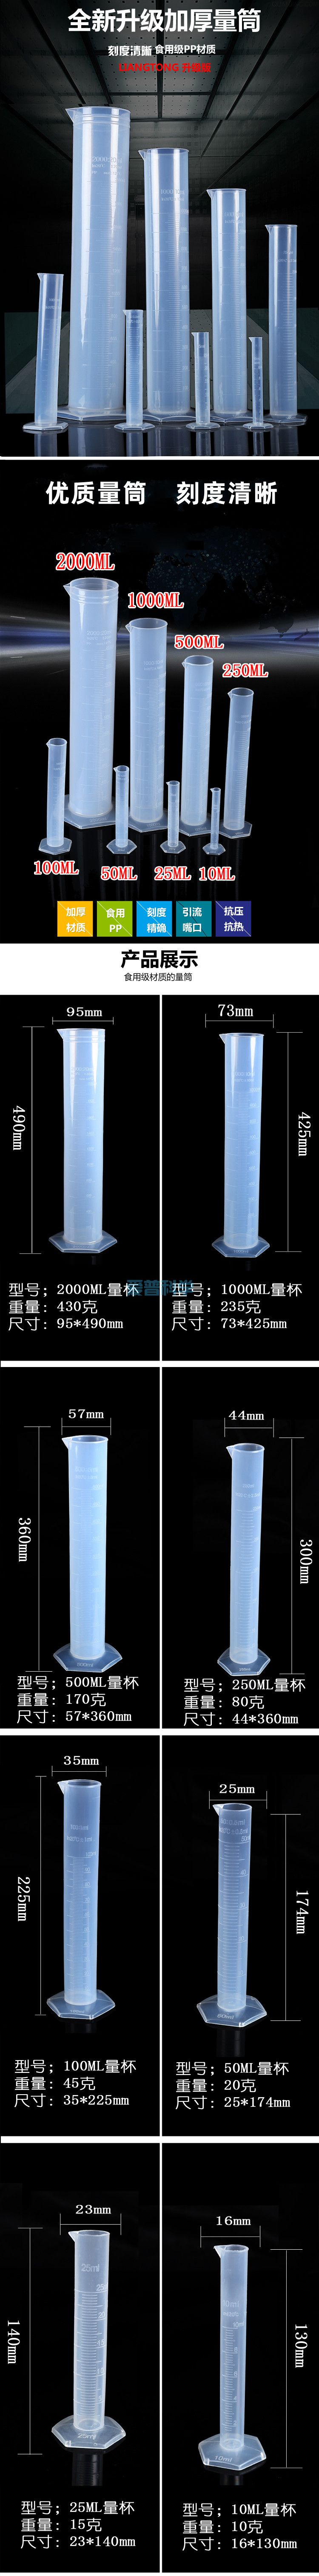 25ml六角塑料量筒,PP,耐高温防腐蚀(图1)